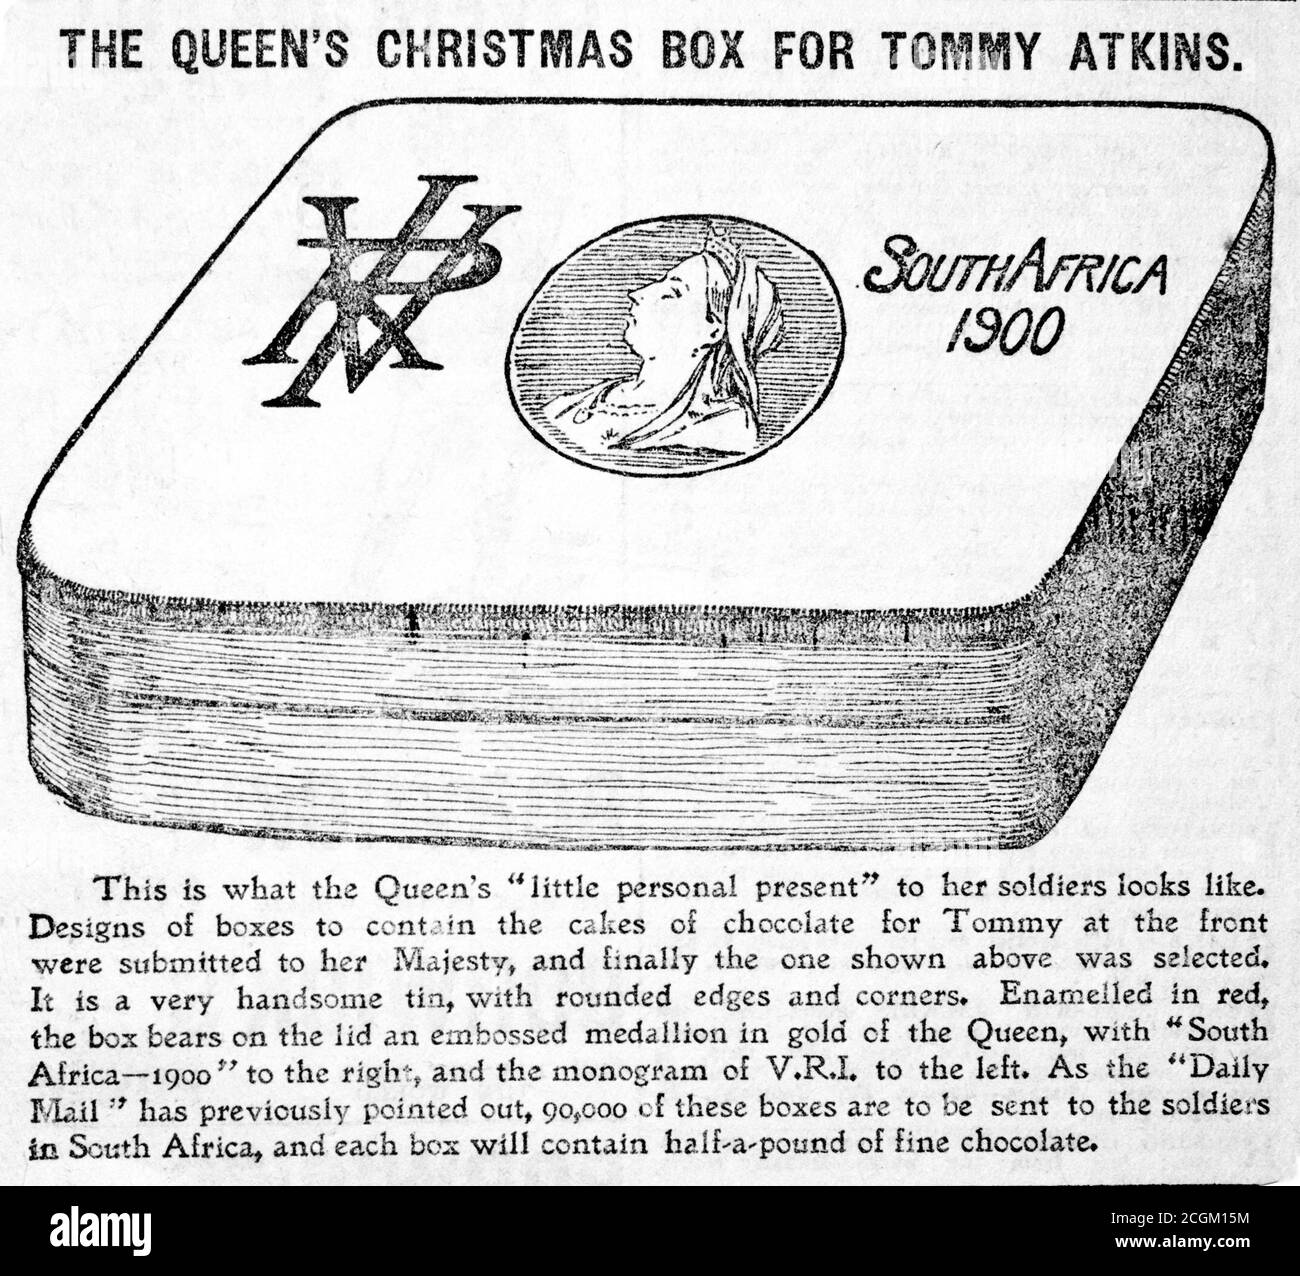 Eine historische Zeitungs-Zeitung, die 'The Queen's Christmas Box for Tommy Atkins' aus der Daily Mail um 1899 mit einer Beschreibung ausschneidet. Die Abbildung zeigt die damals vorgeschlagene Weihnachtskiste, die an Erstarrende geschickt werden soll, die im Zweiten Burenkrieg dienen. Stockfoto